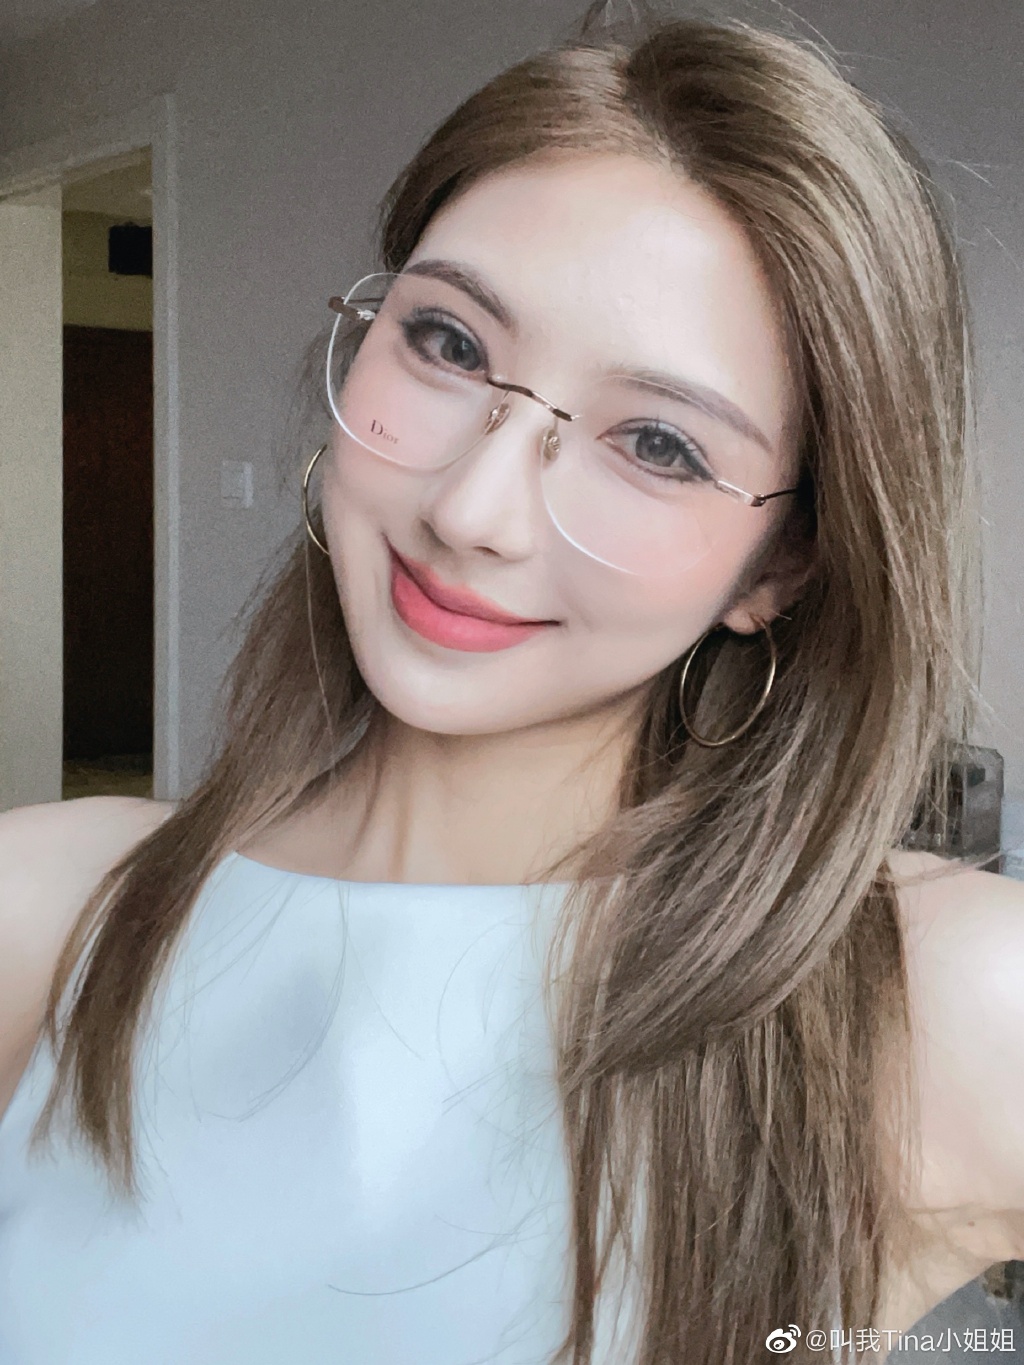 叫我Tina小姐姐with or without glasses？